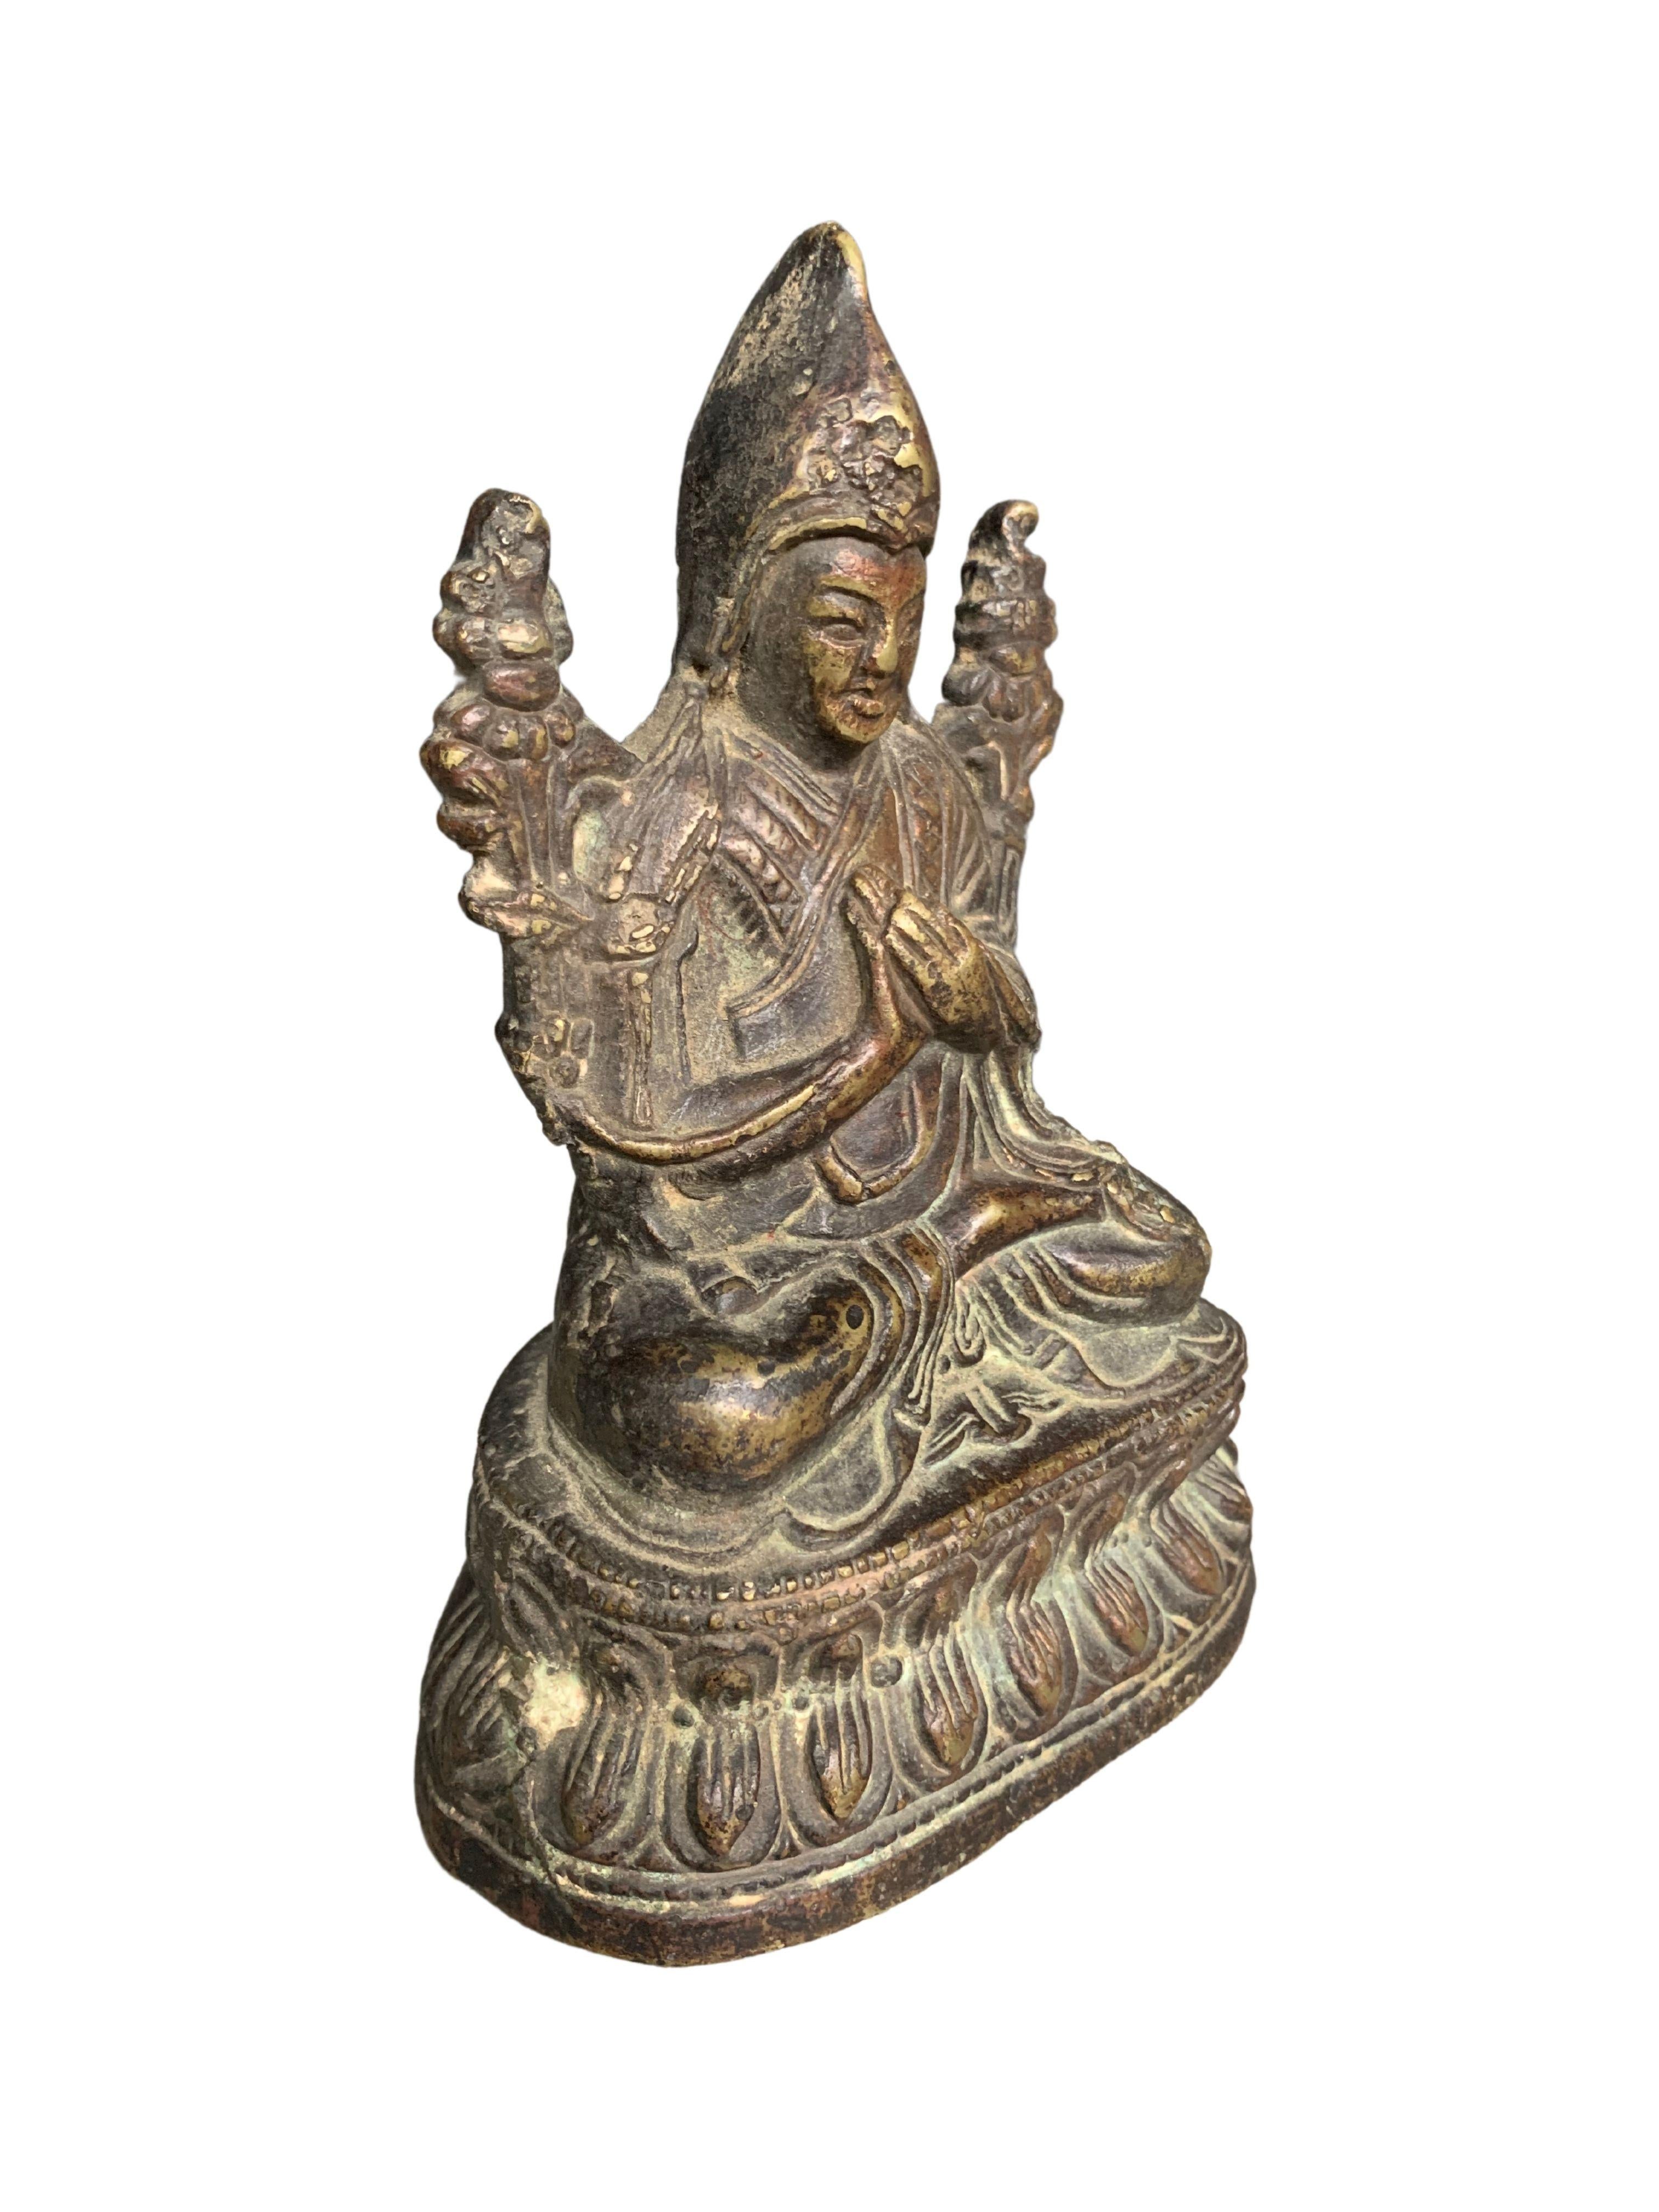 Un merveilleux bouddha tibétain assis en bronze sur un piédestal en forme de lotus du 19ème siècle. Ce bouddha présente une belle patine liée à l'âge ainsi que de riches détails.